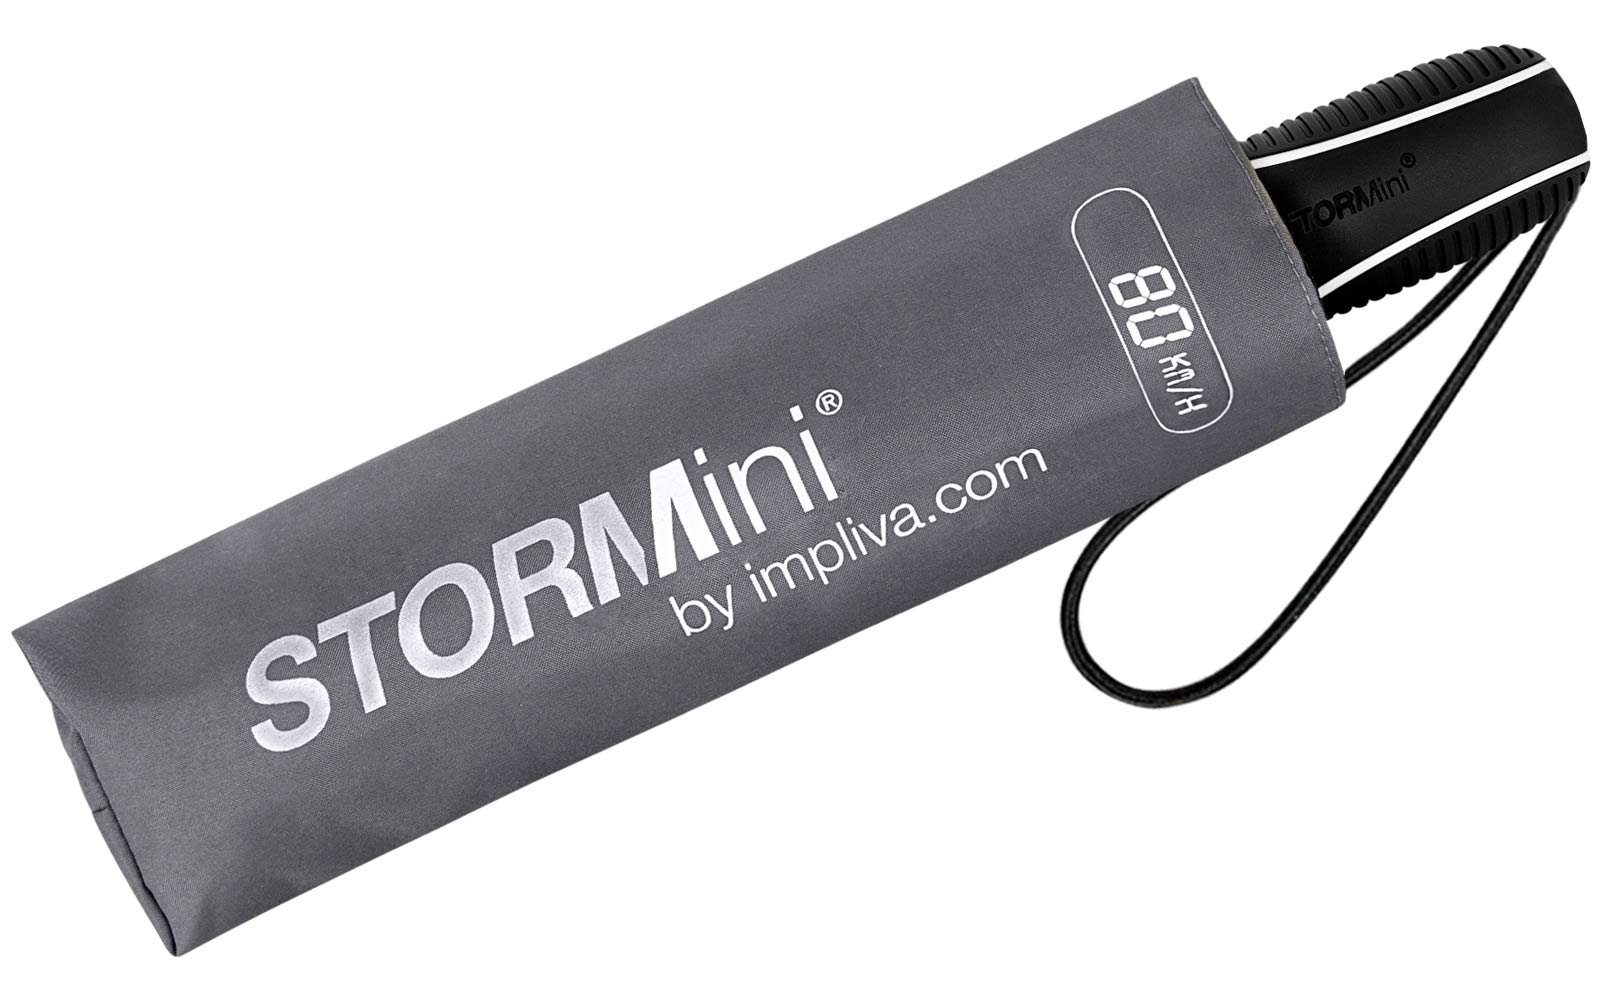 sich Wind, in zu Sturmschirm, km/h durch der Schirm Taschenregenschirm Impliva den bis grau seine hält aus STORMini besondere Form dreht 80 aerodynamischer